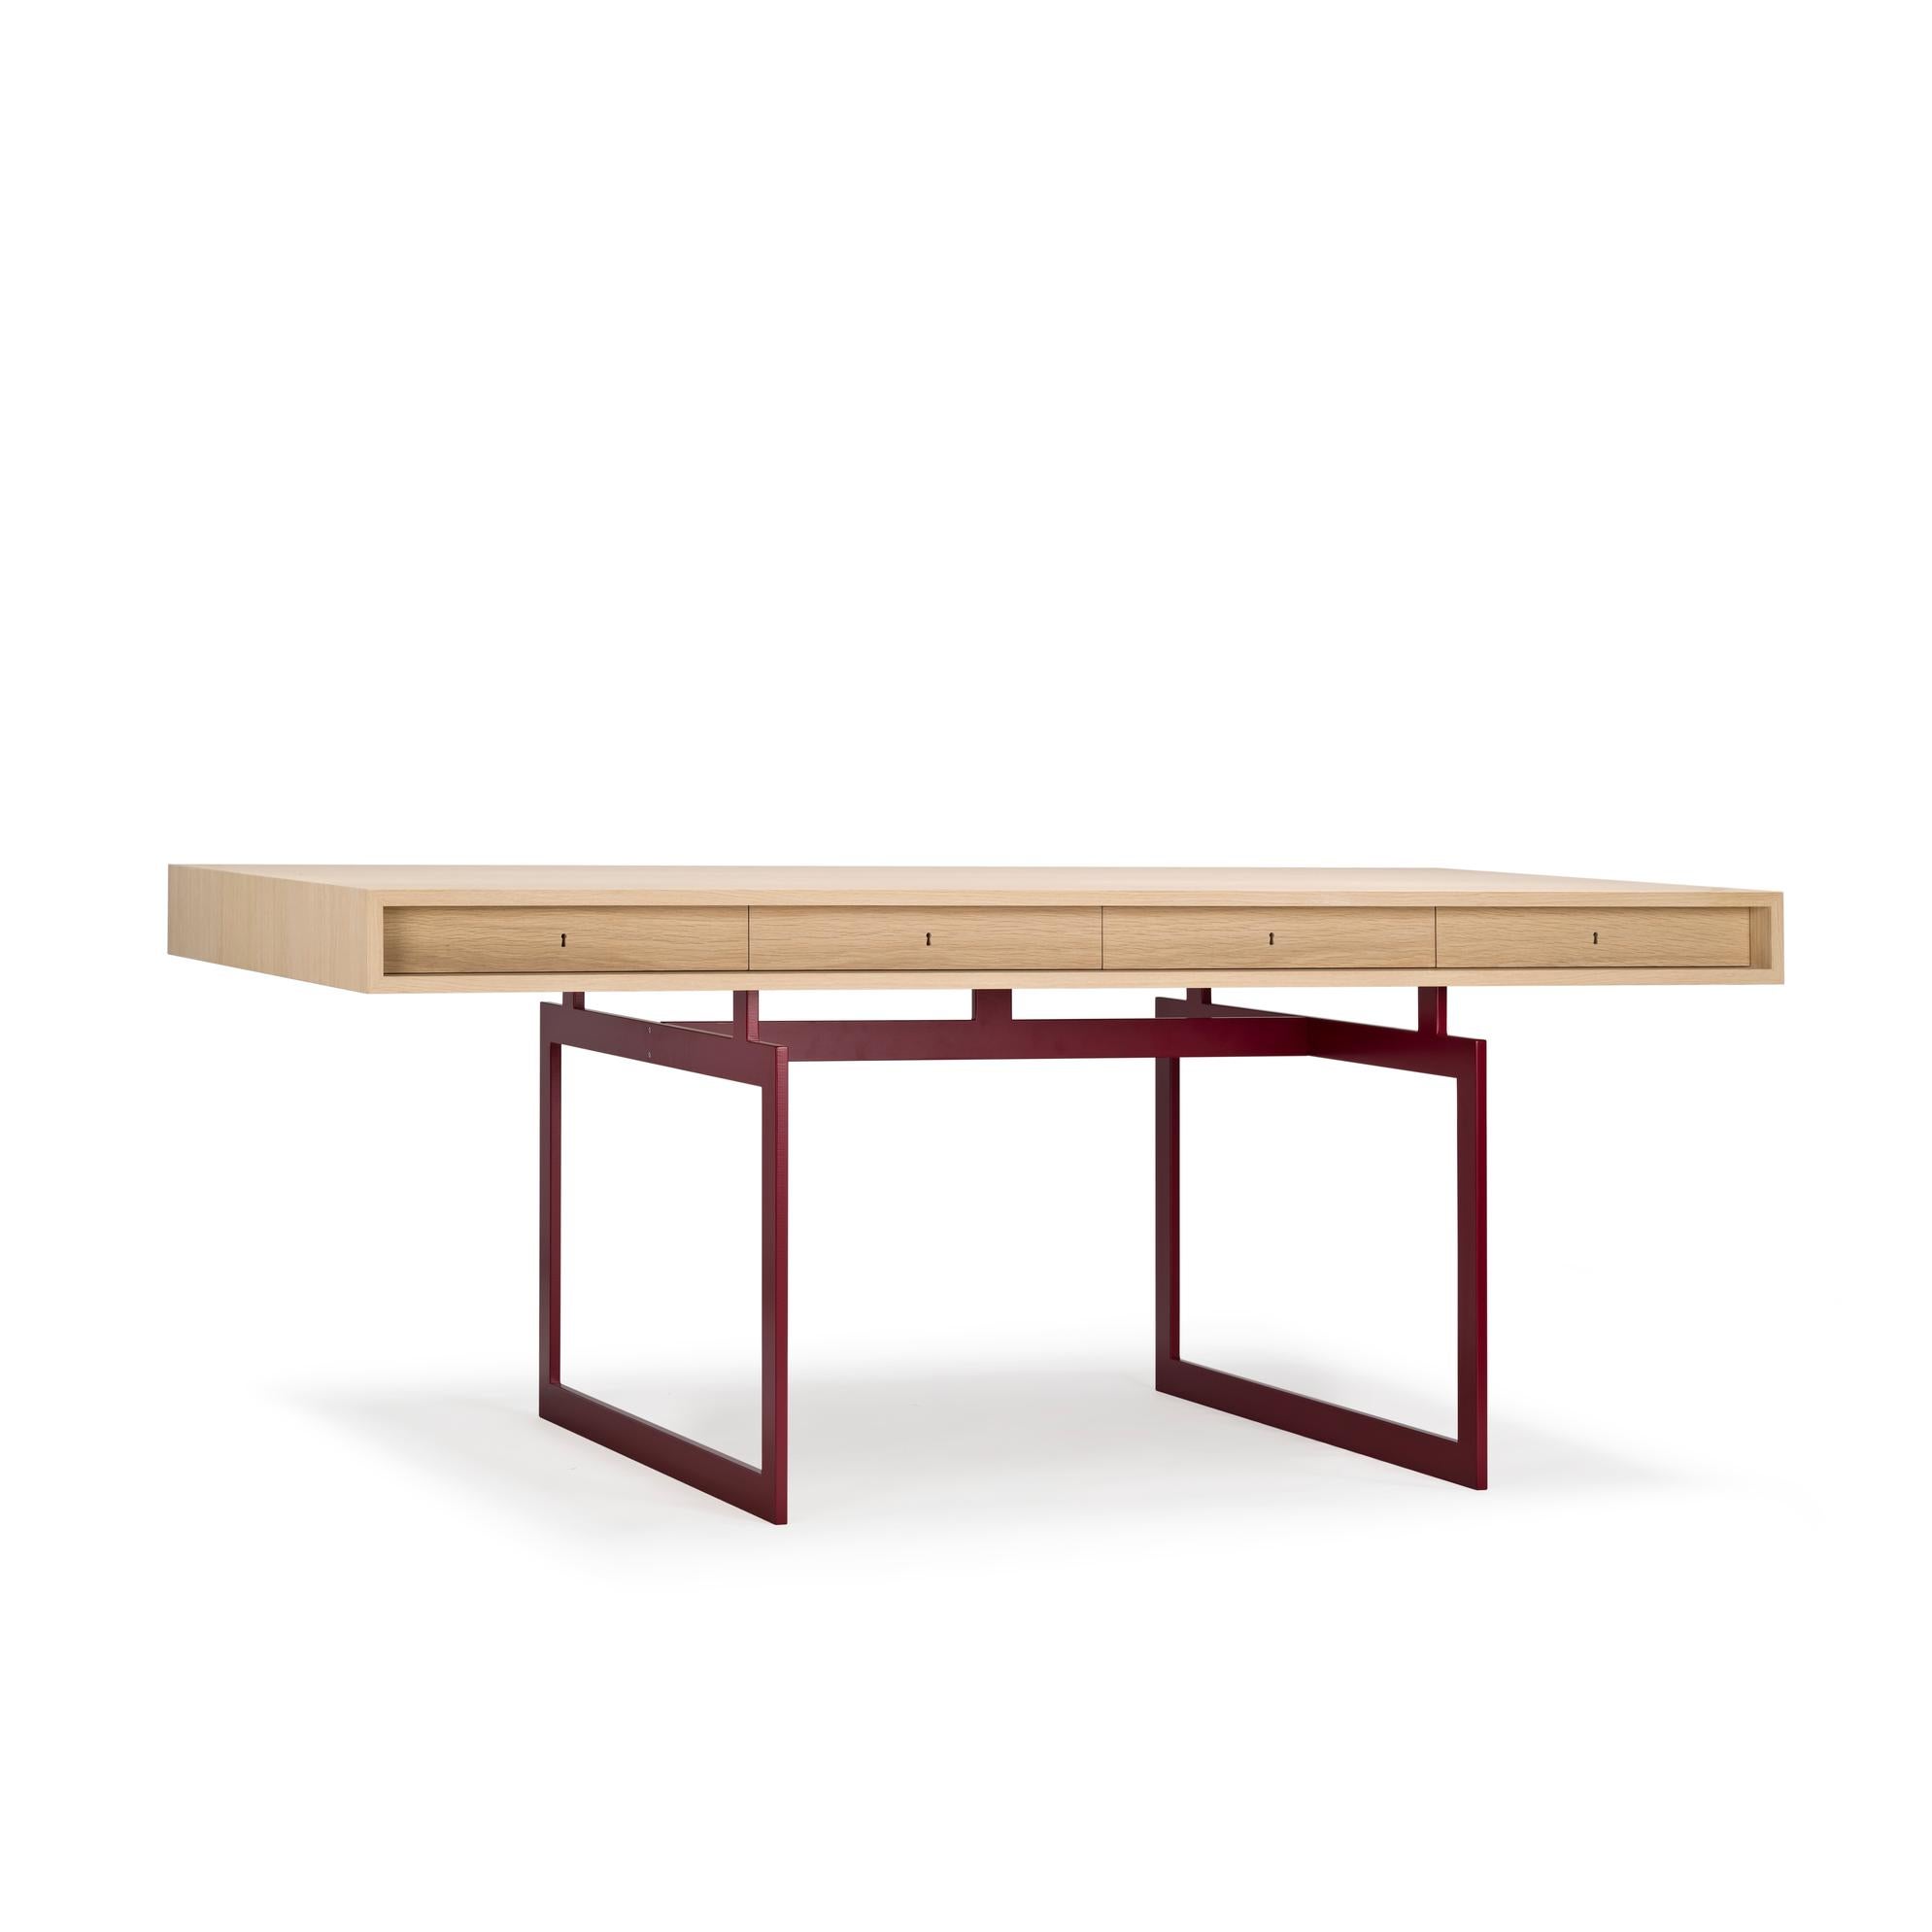 Table conçue par Bodil Kjær en 1959. 

Nous sommes fiers de vous présenter notre première création d'un designer danois. Dans ce cas, l'architecte, professeur et designer danois Bodil Kjær. Ce bureau emblématique, conçu en 1959, était le premier